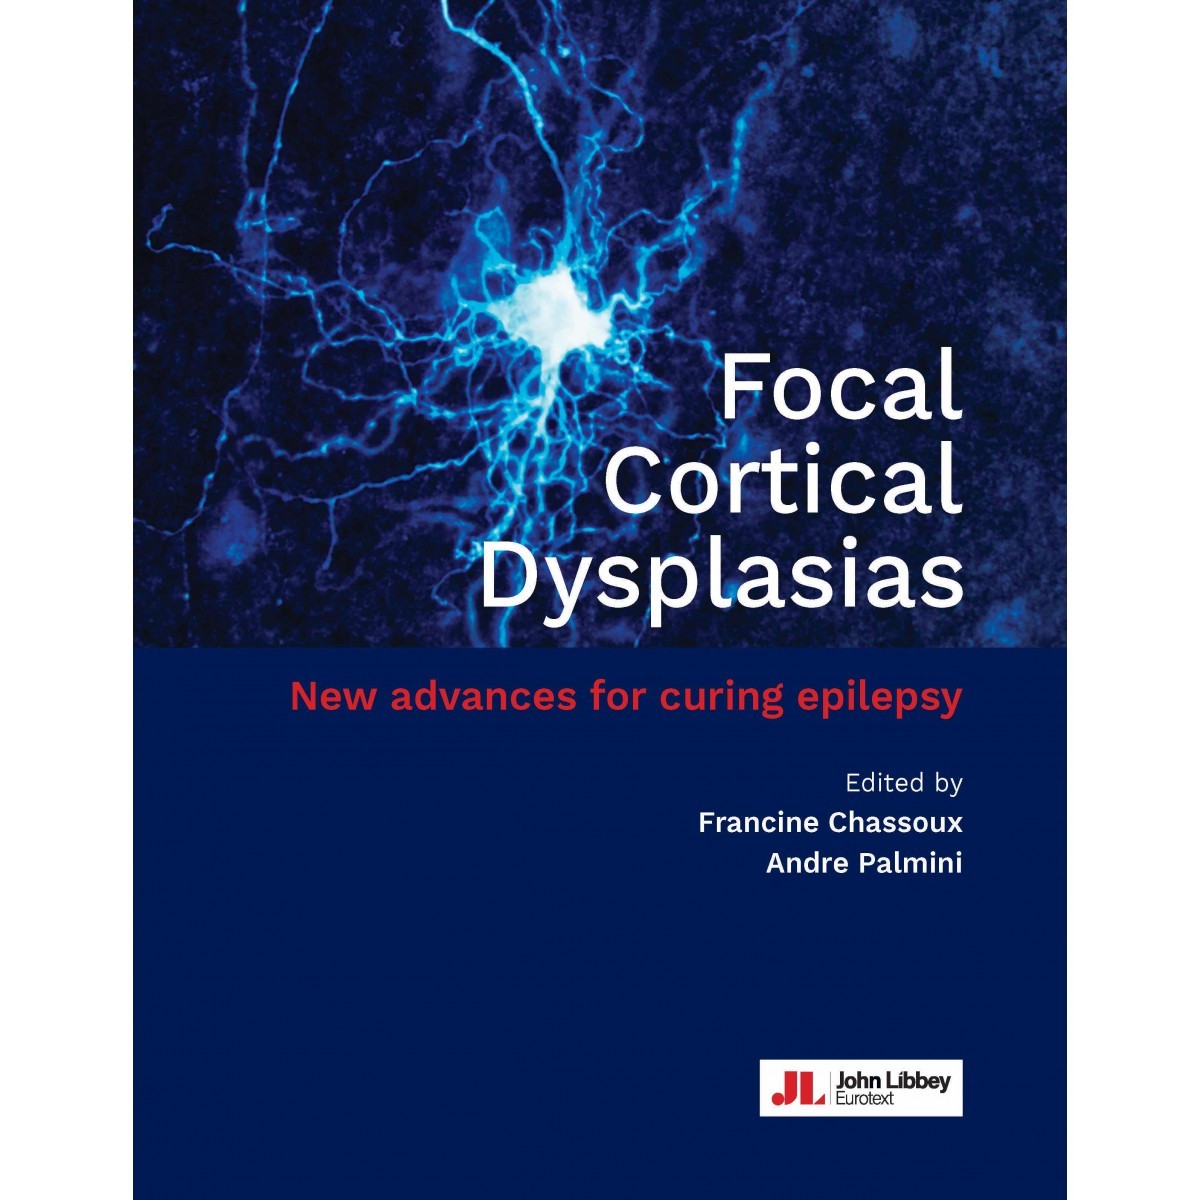 Focal cortical dysplasias